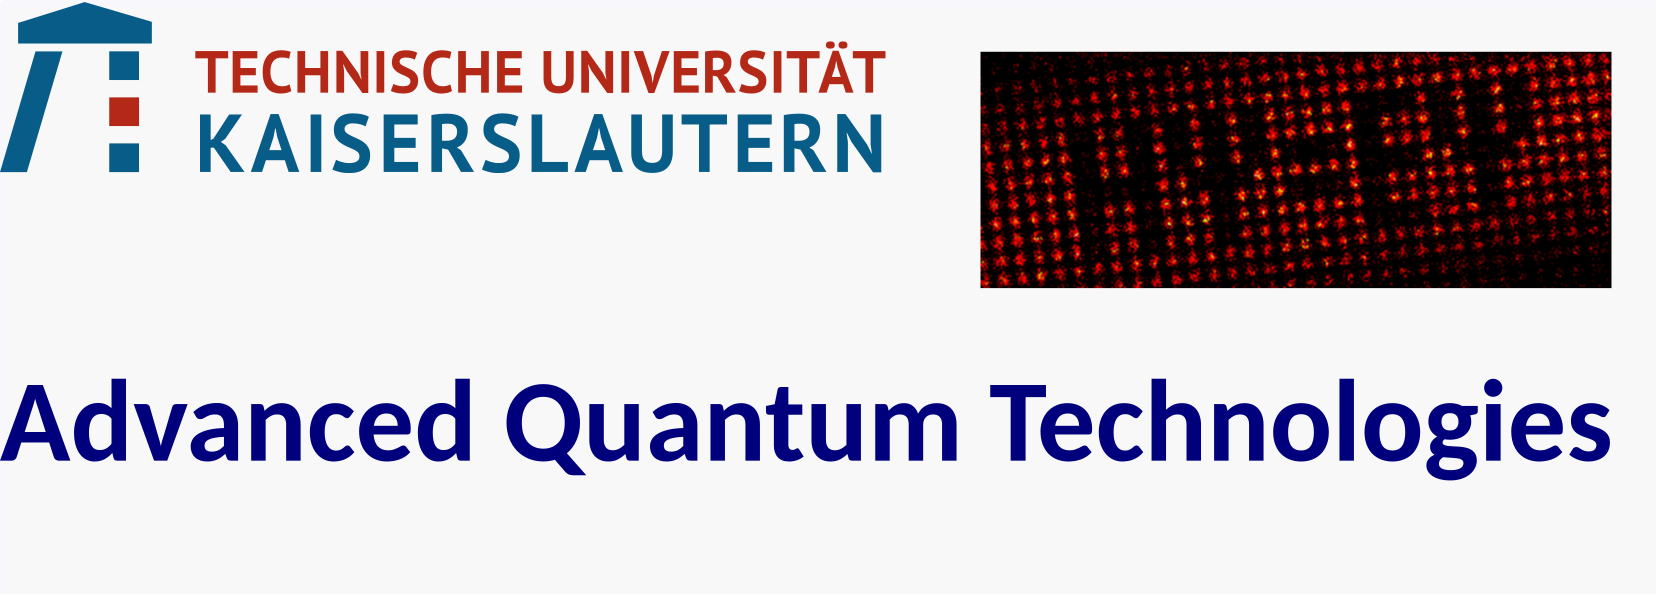 Advanced Quantum Technologies